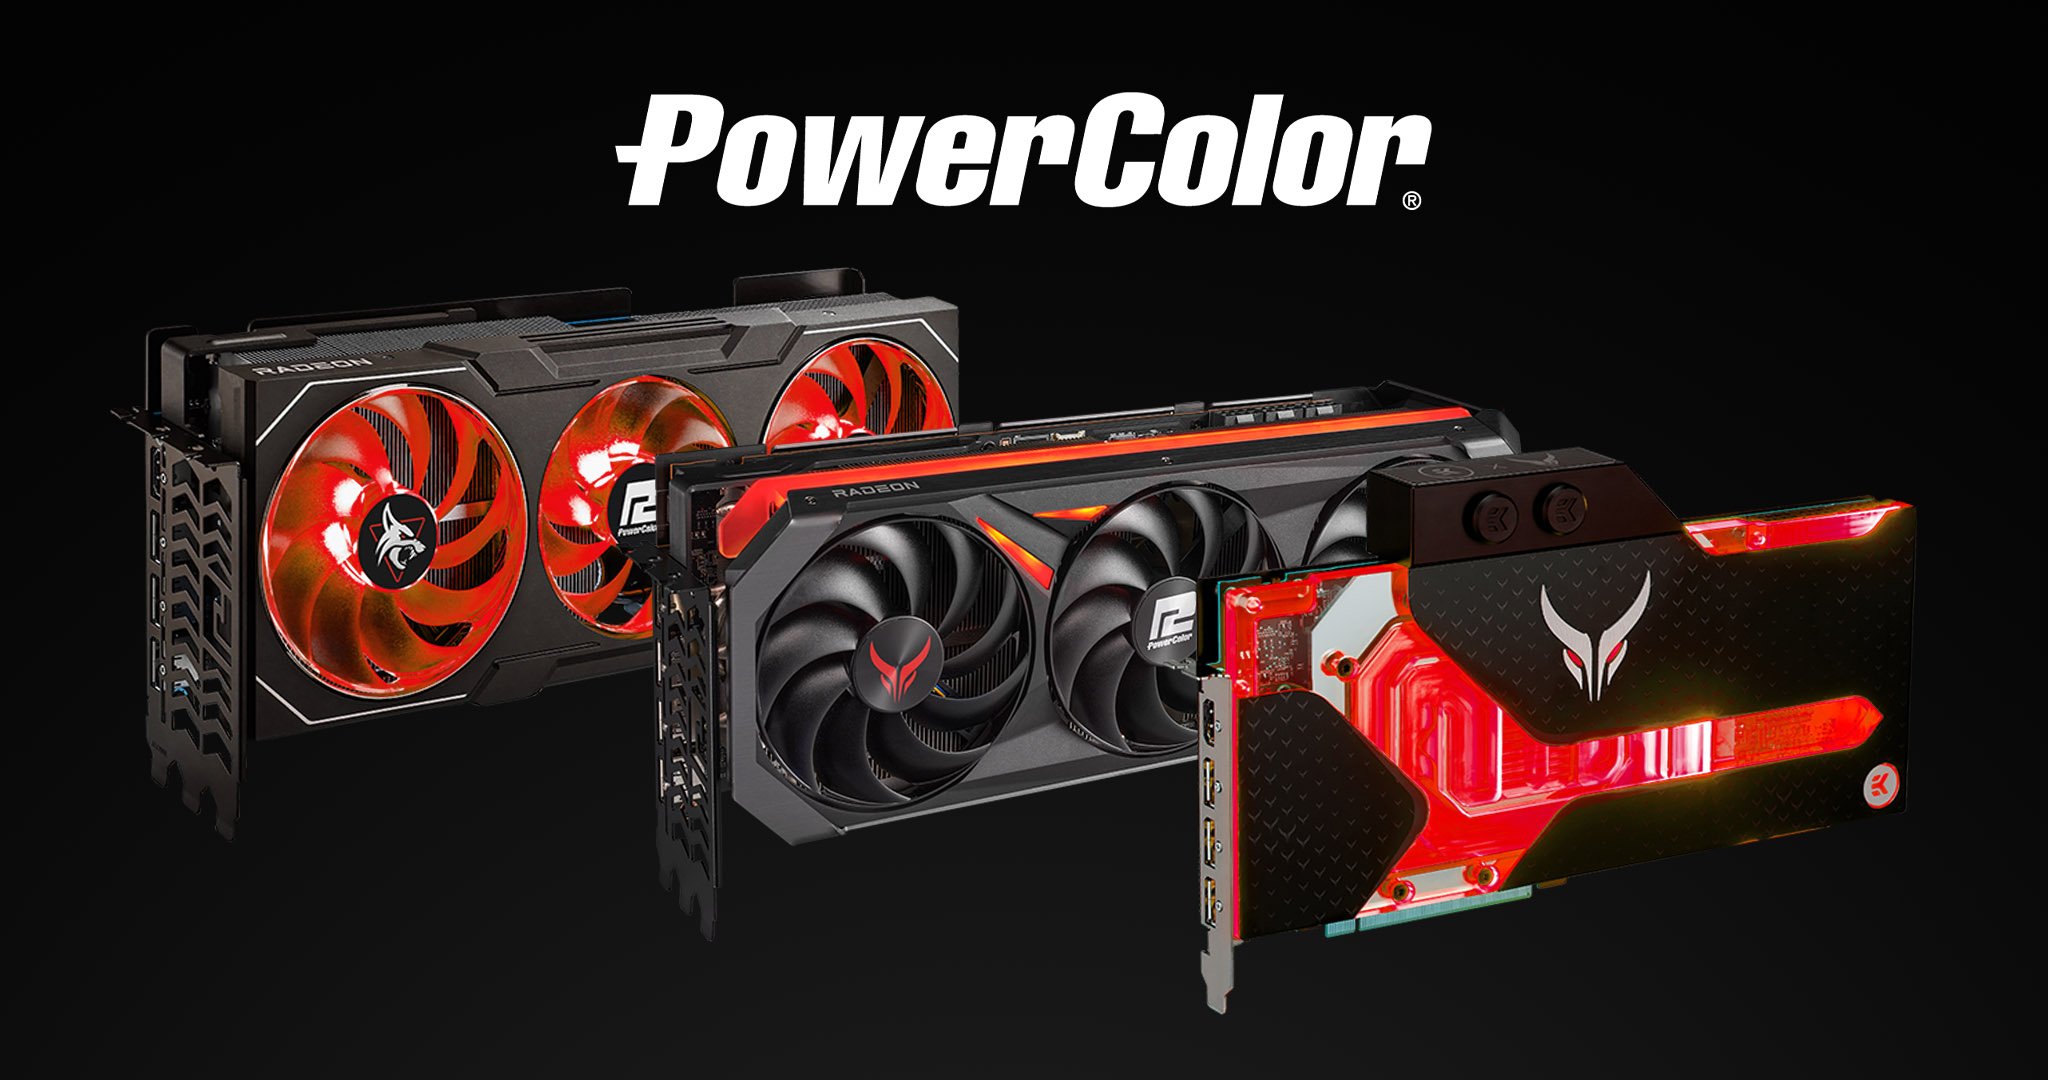 Powercolor GPUs